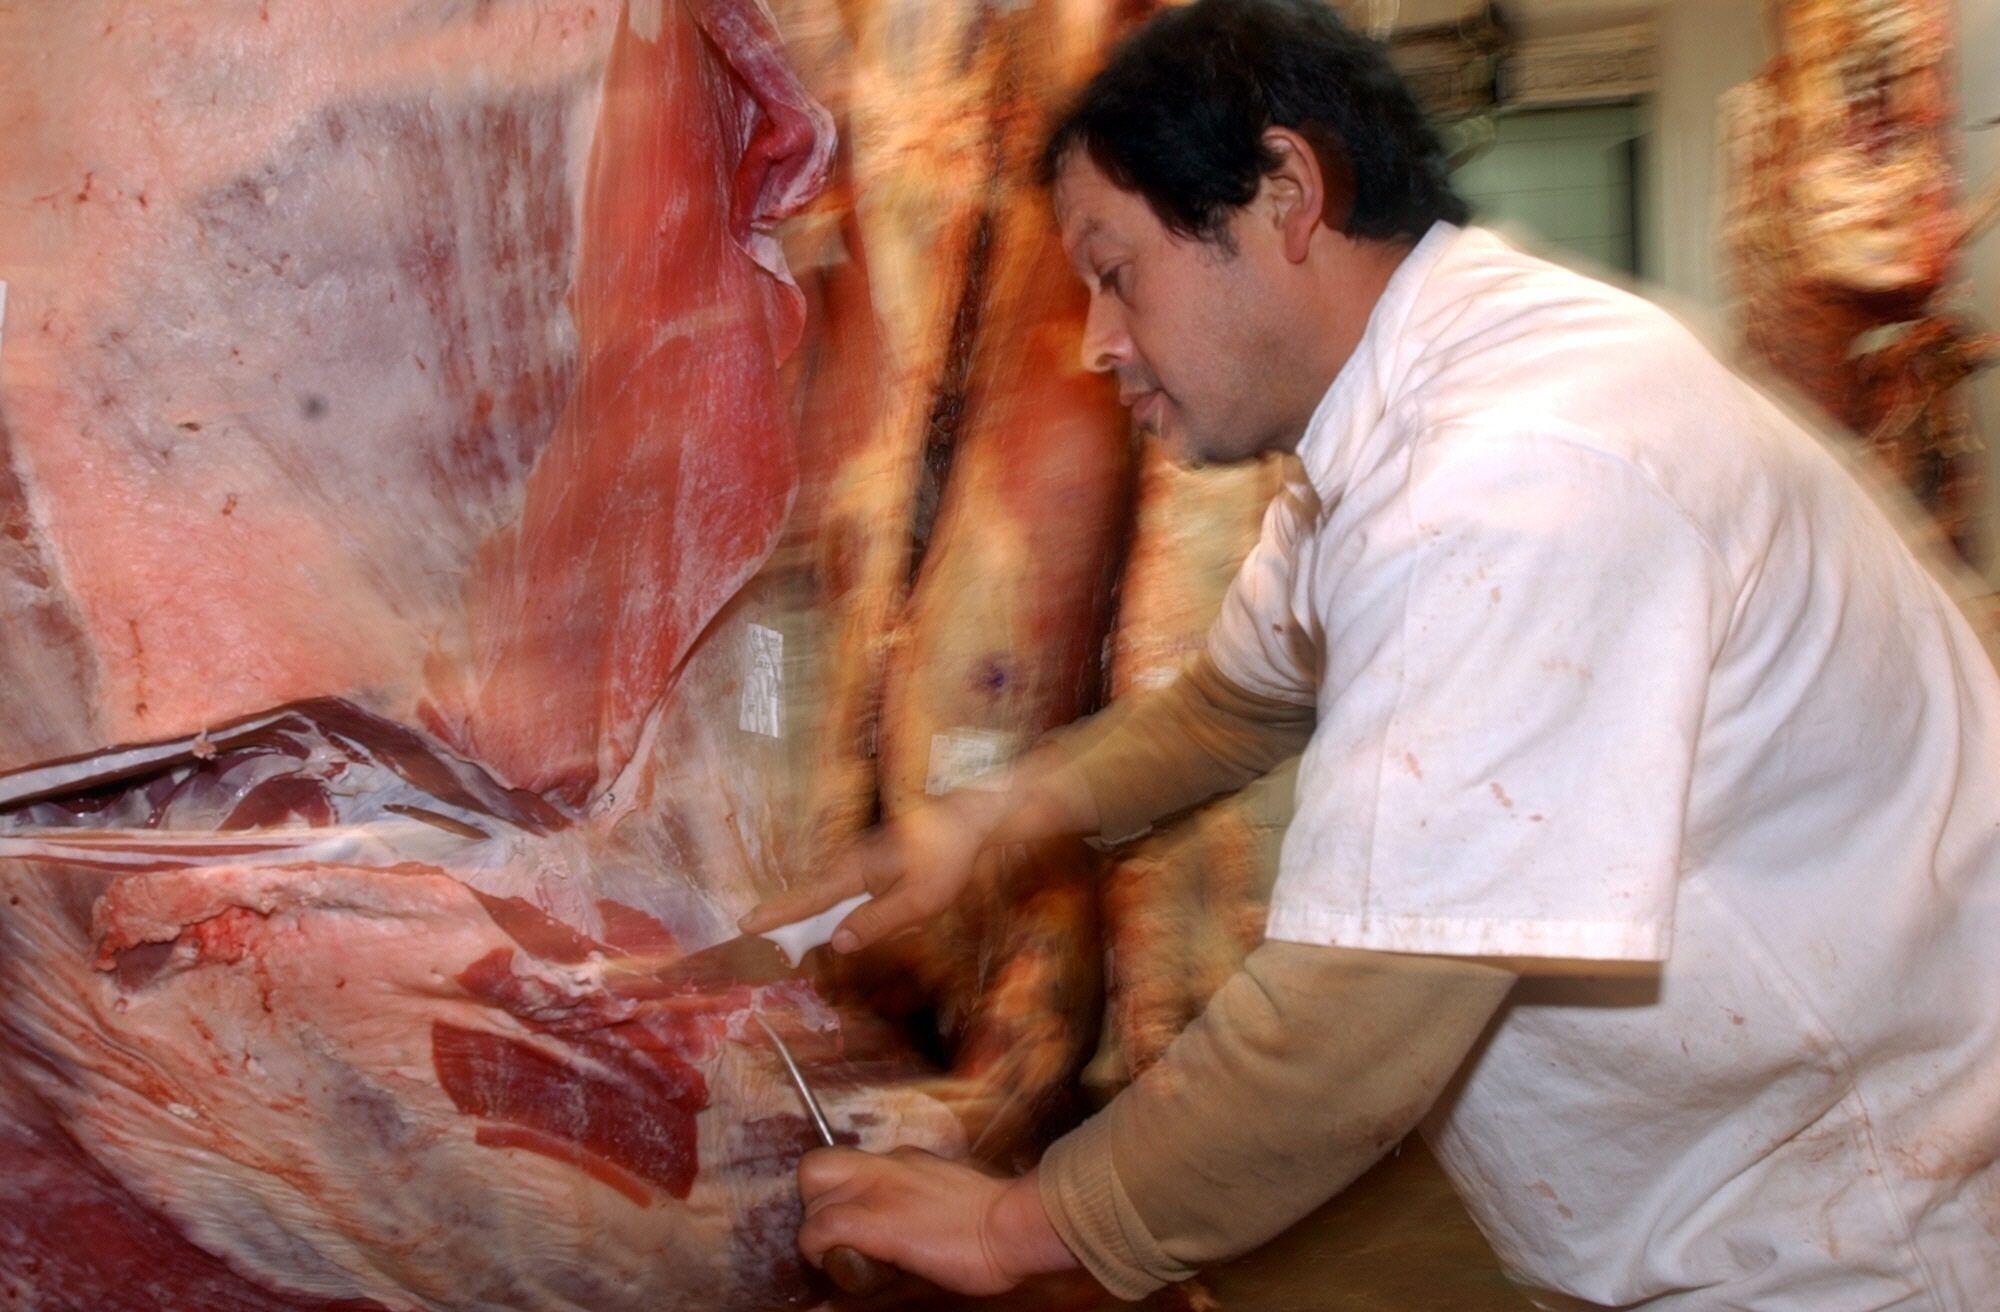 Es alto el impacto del cepo a la exportación de carne vacuna en el sector de los trabajadores. EFE/Cézaro De Luca/Archivo
